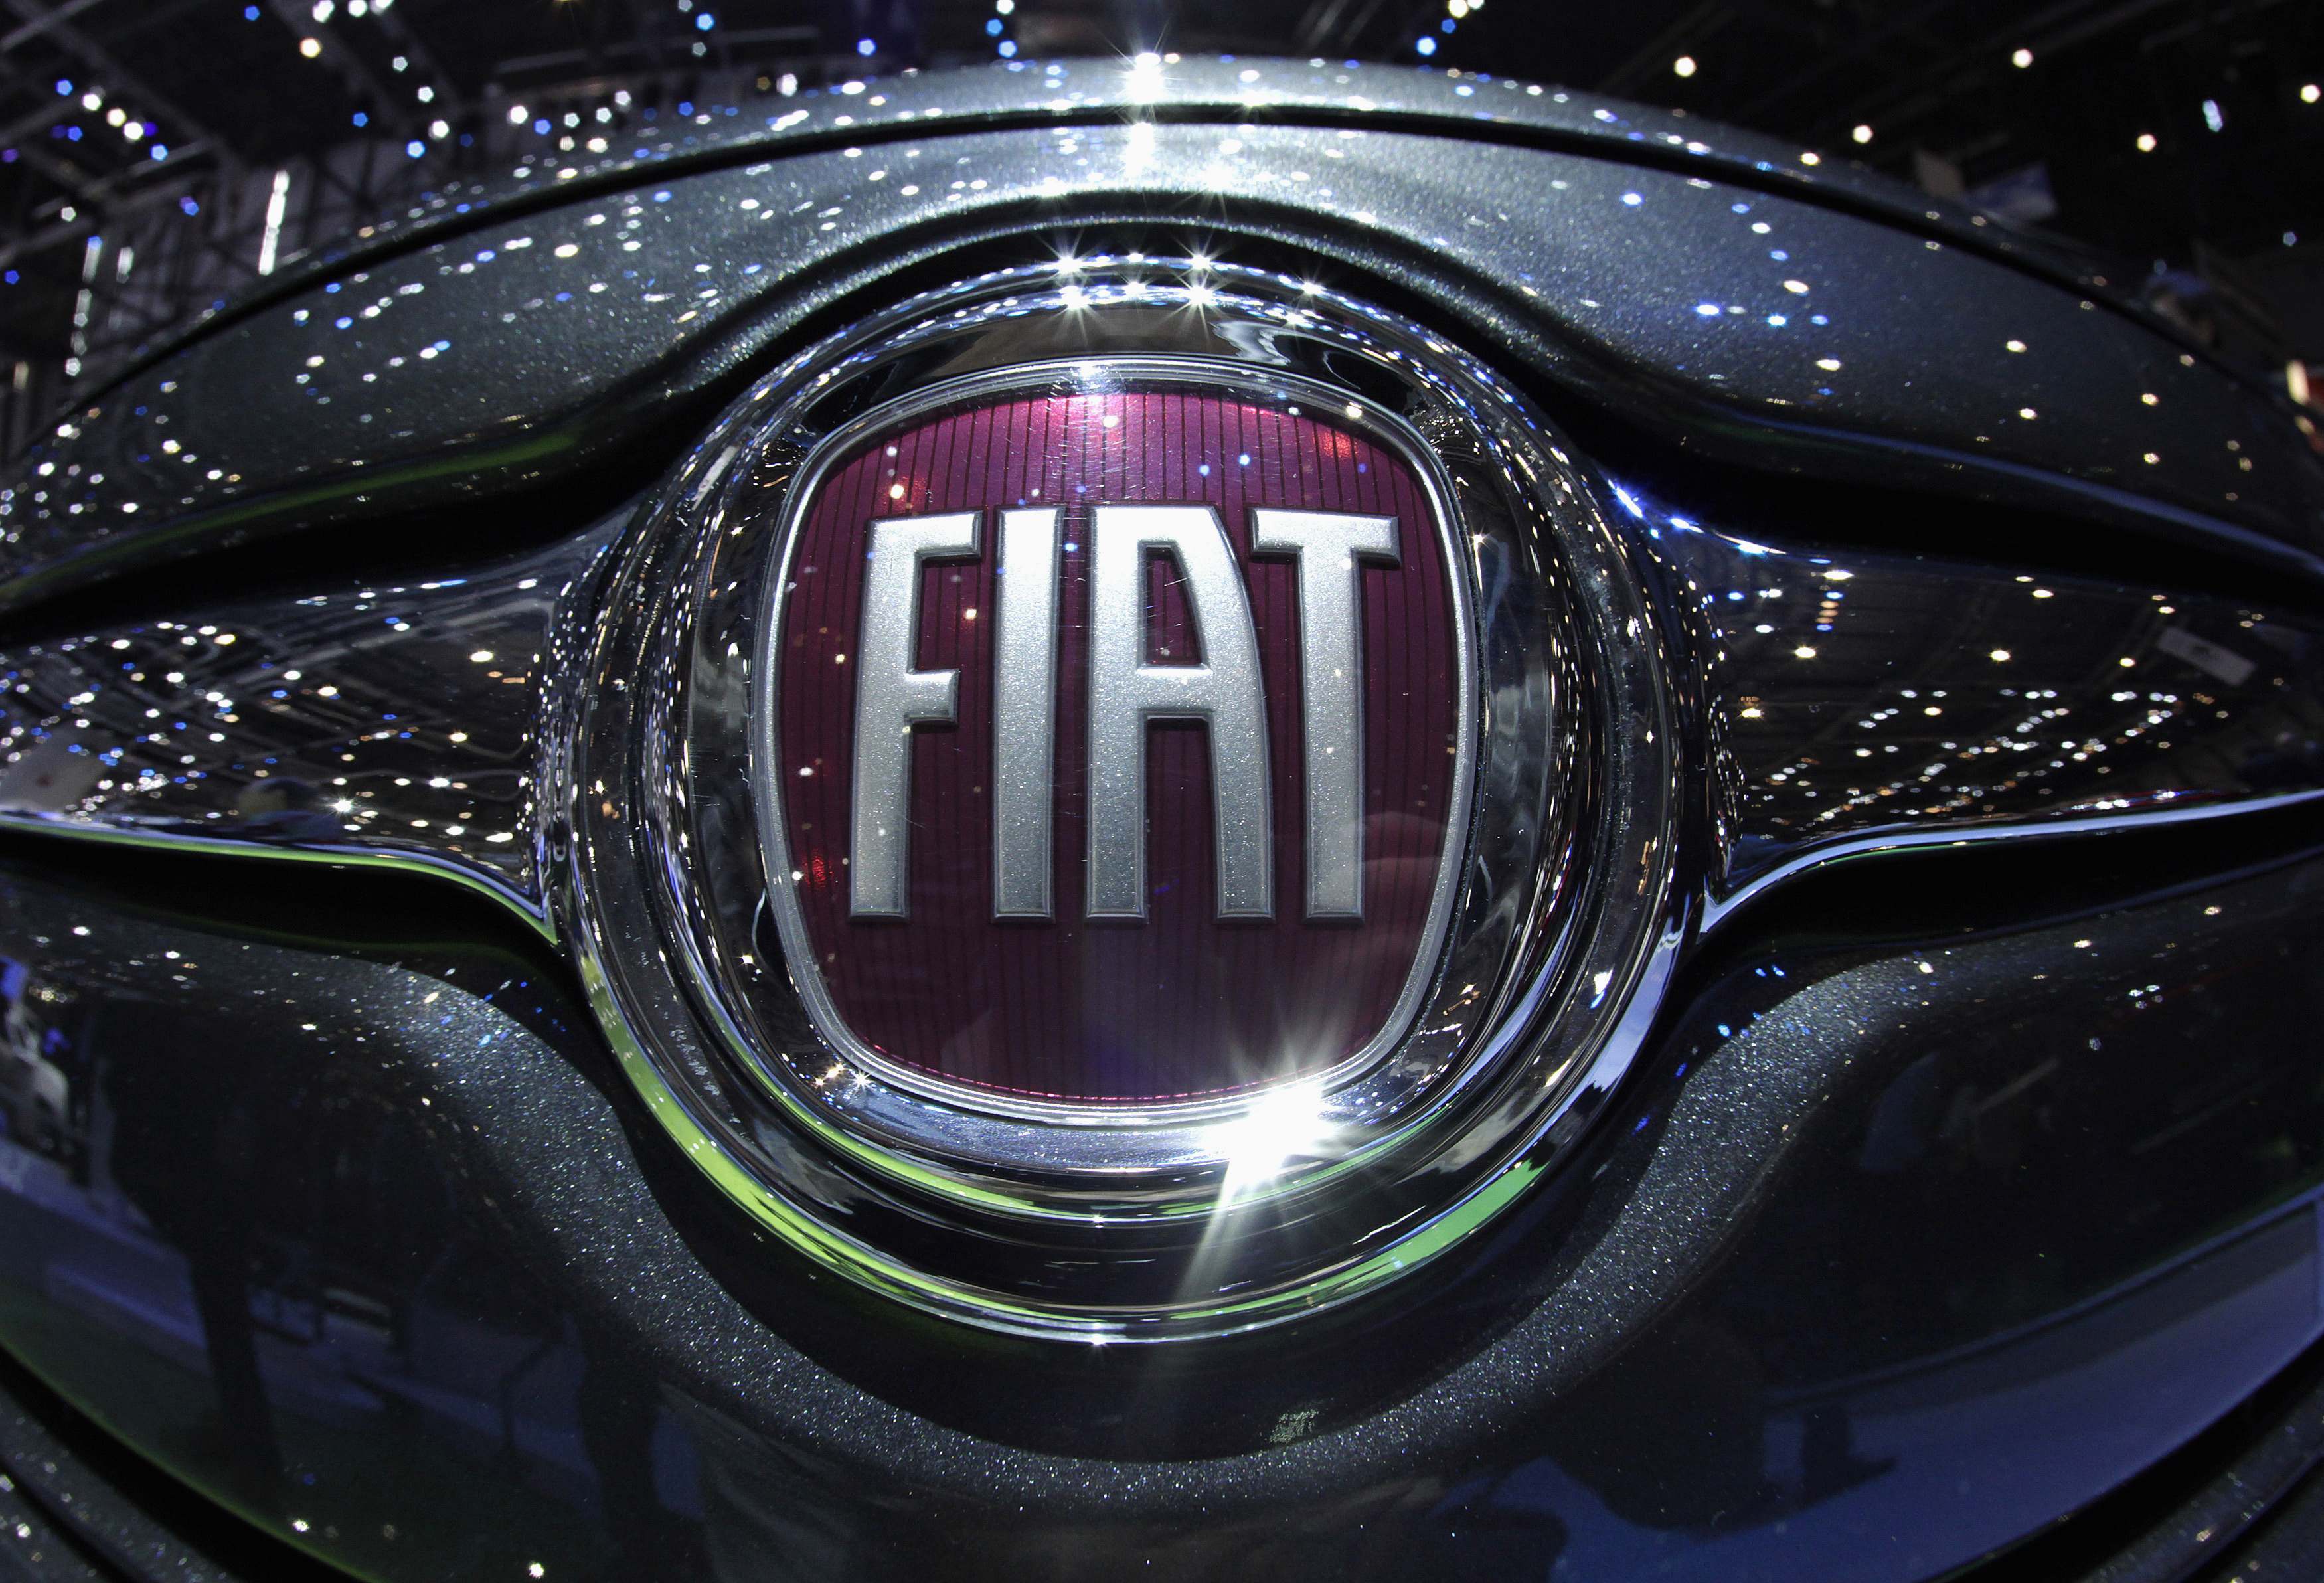 Ιστορική ημέρα για την FIAT! Αλλάζει όνομα και φεύγει από την Ιταλία για άλλες ευρωπαϊκές χώρες